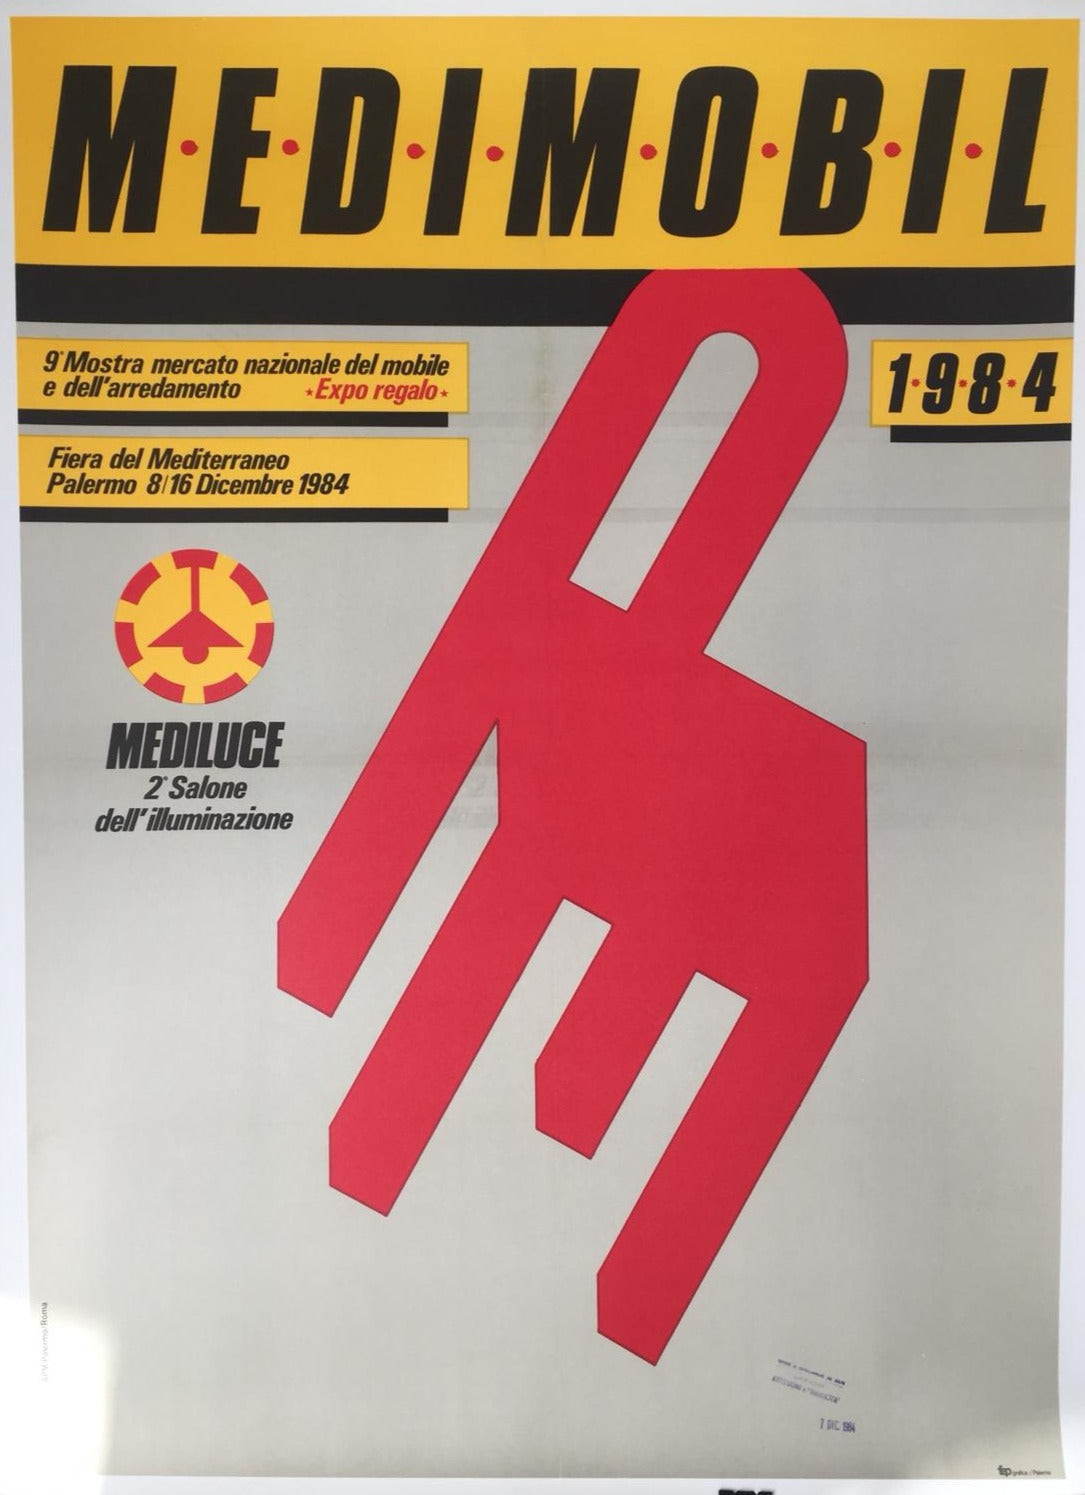 Medimodel '84, Fiera Del Mediterraneo